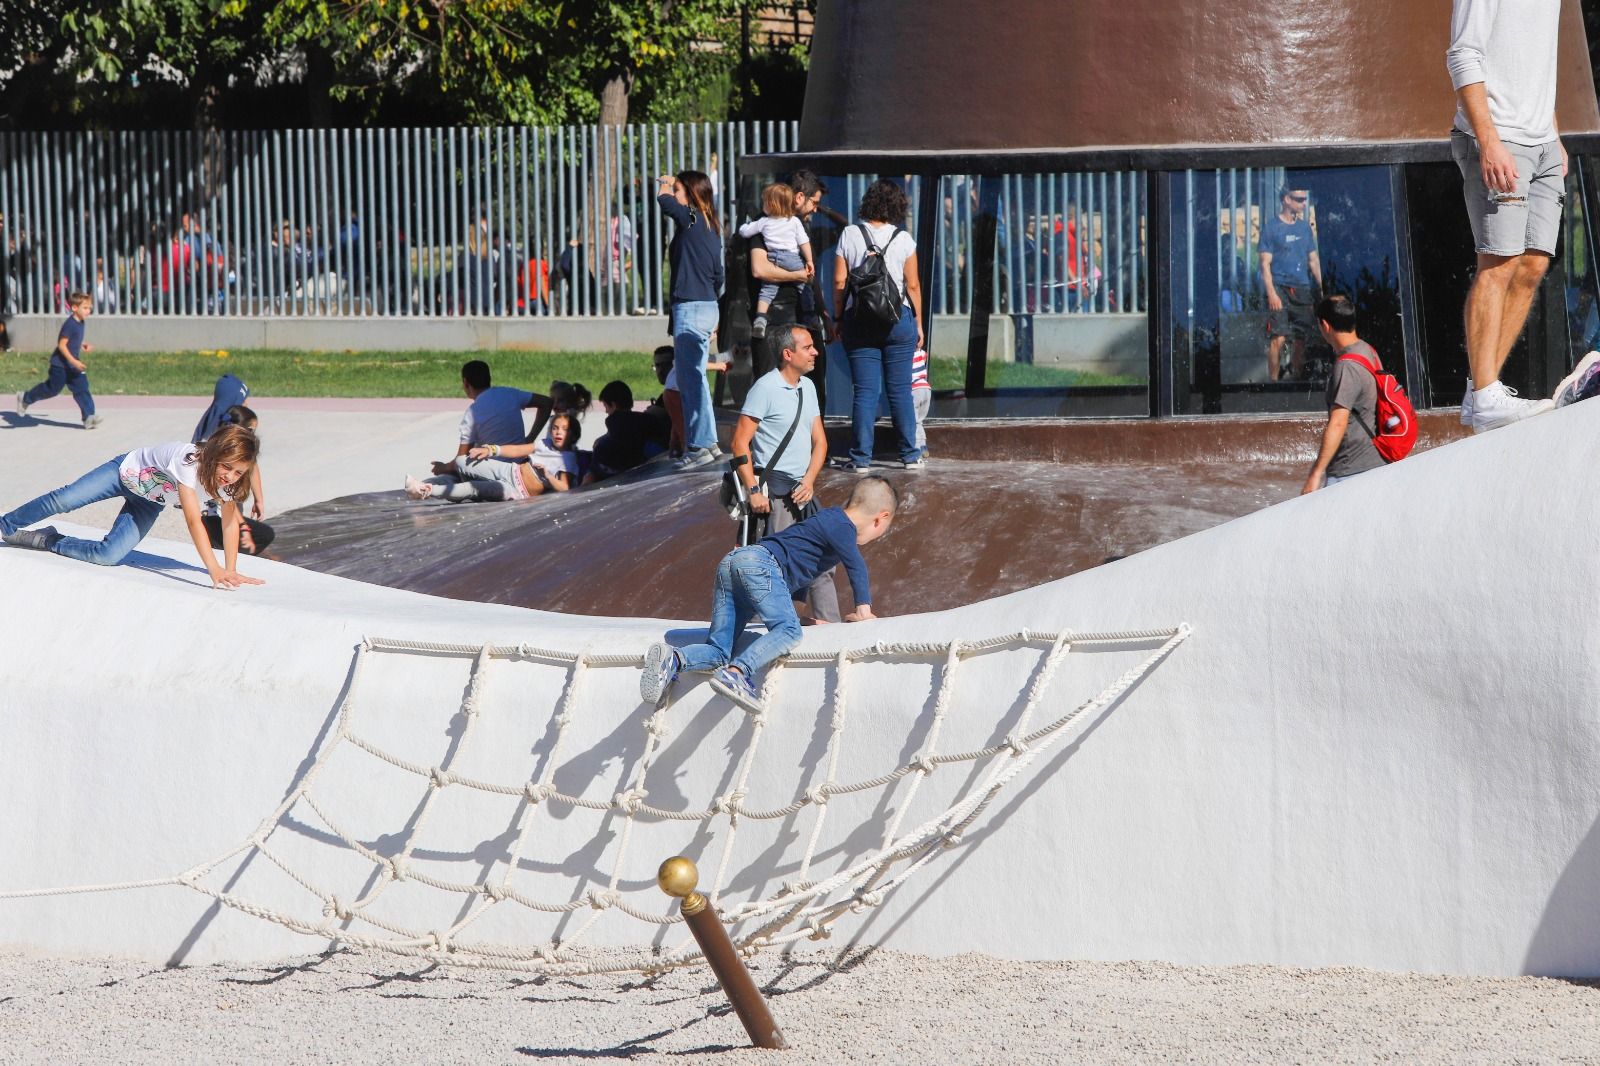 Reapertura del Parque Gulliver en València